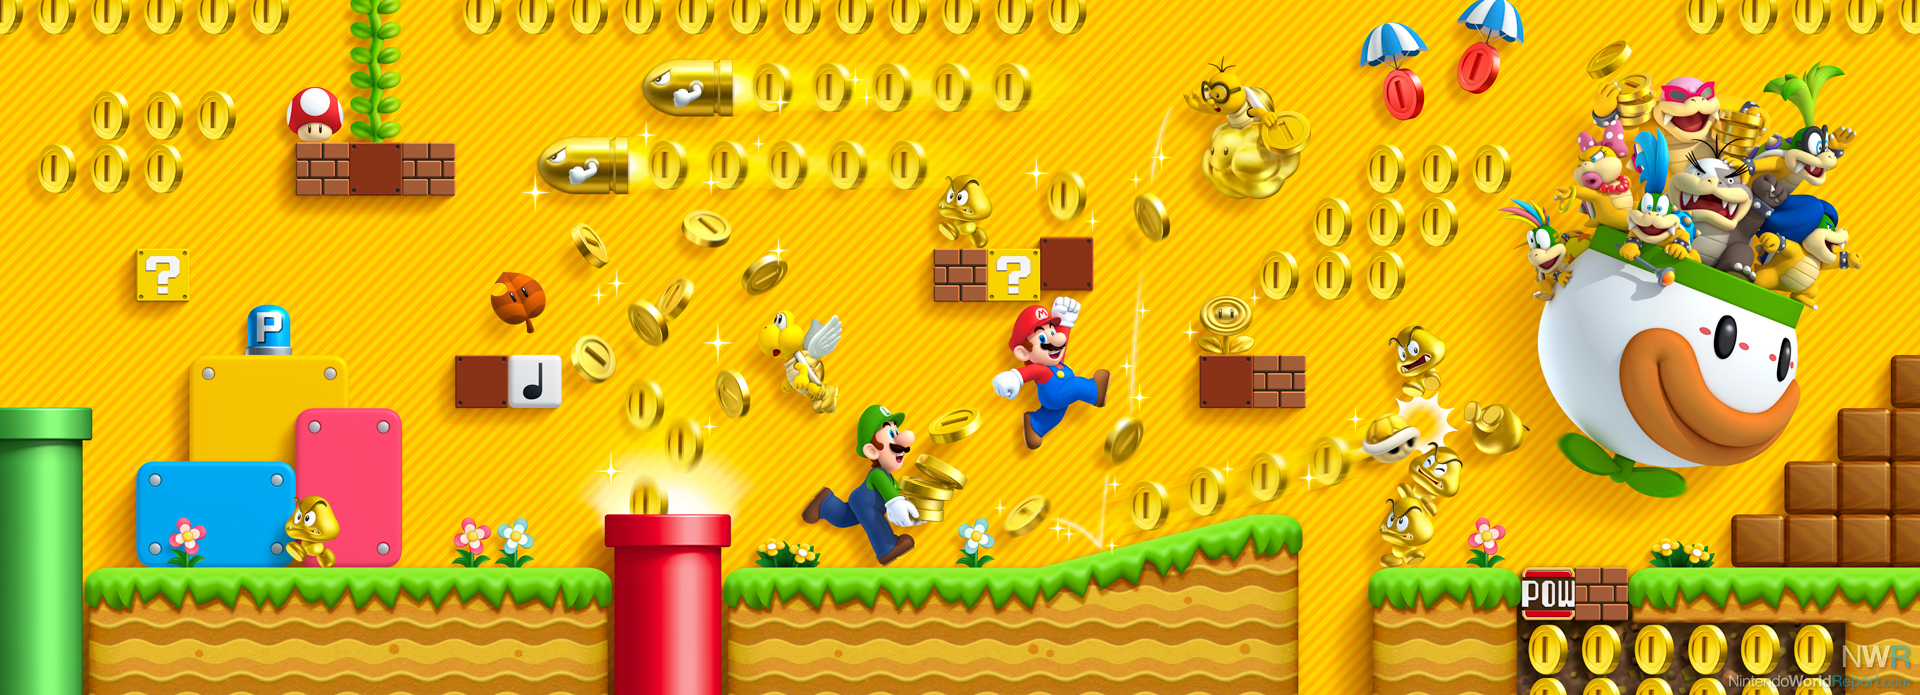 New Super Mario Bros. 2 Review - Review - Nintendo World Report